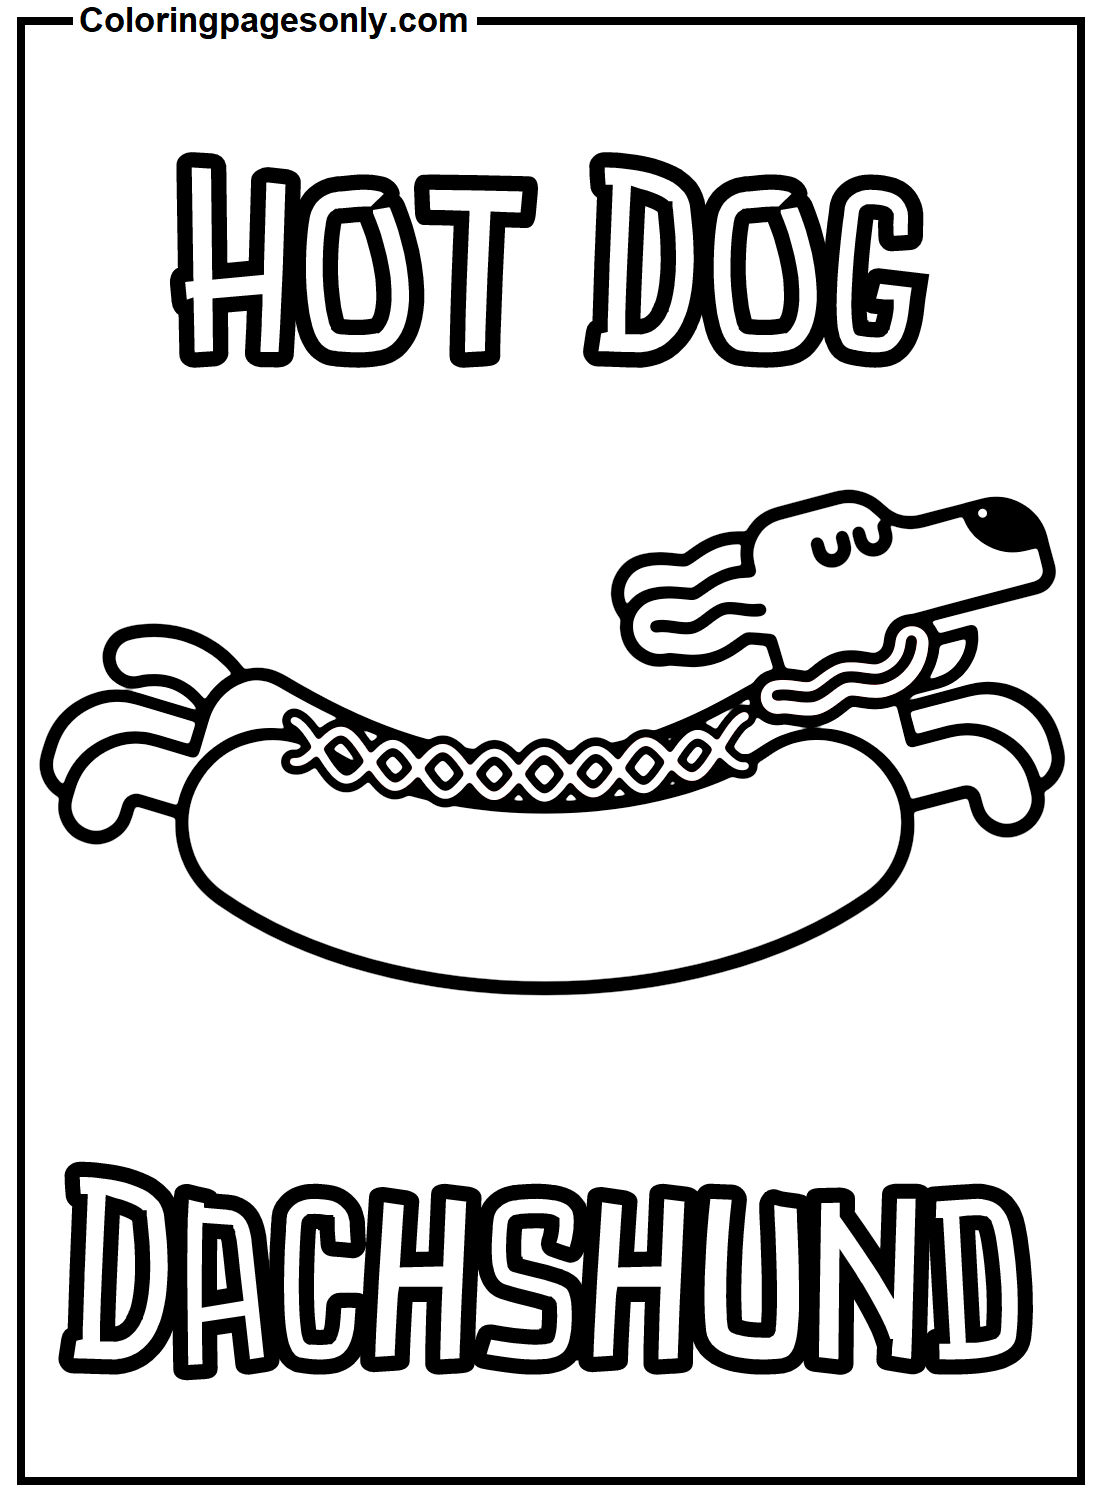 Perro salchicha de Hot Dog de Hot Dog